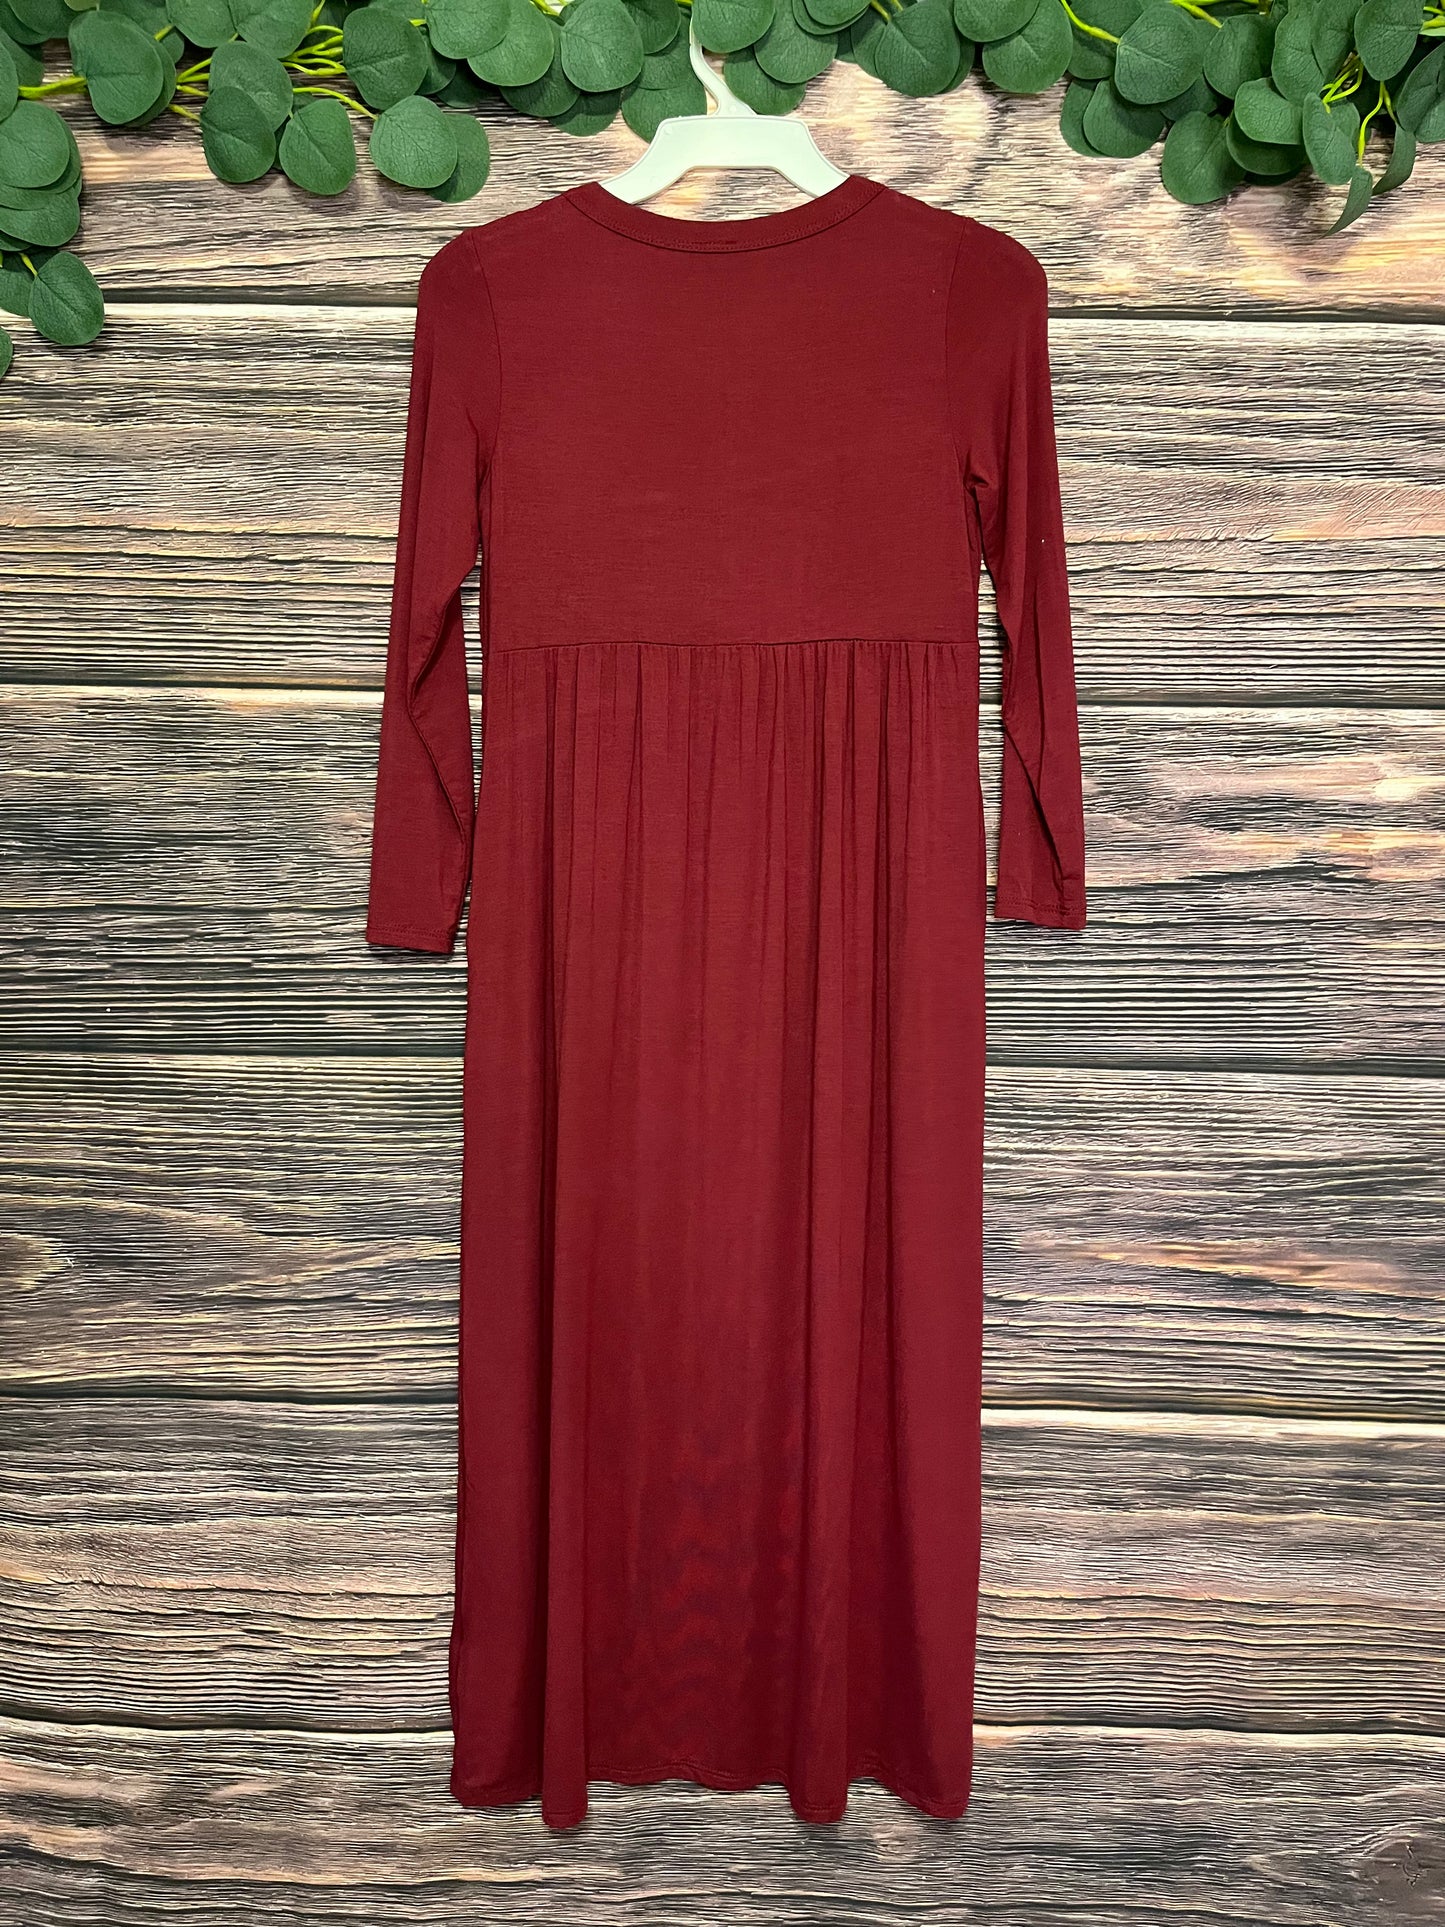 3/4 Sleeve Deep Burgundy Girls Maxi Dress